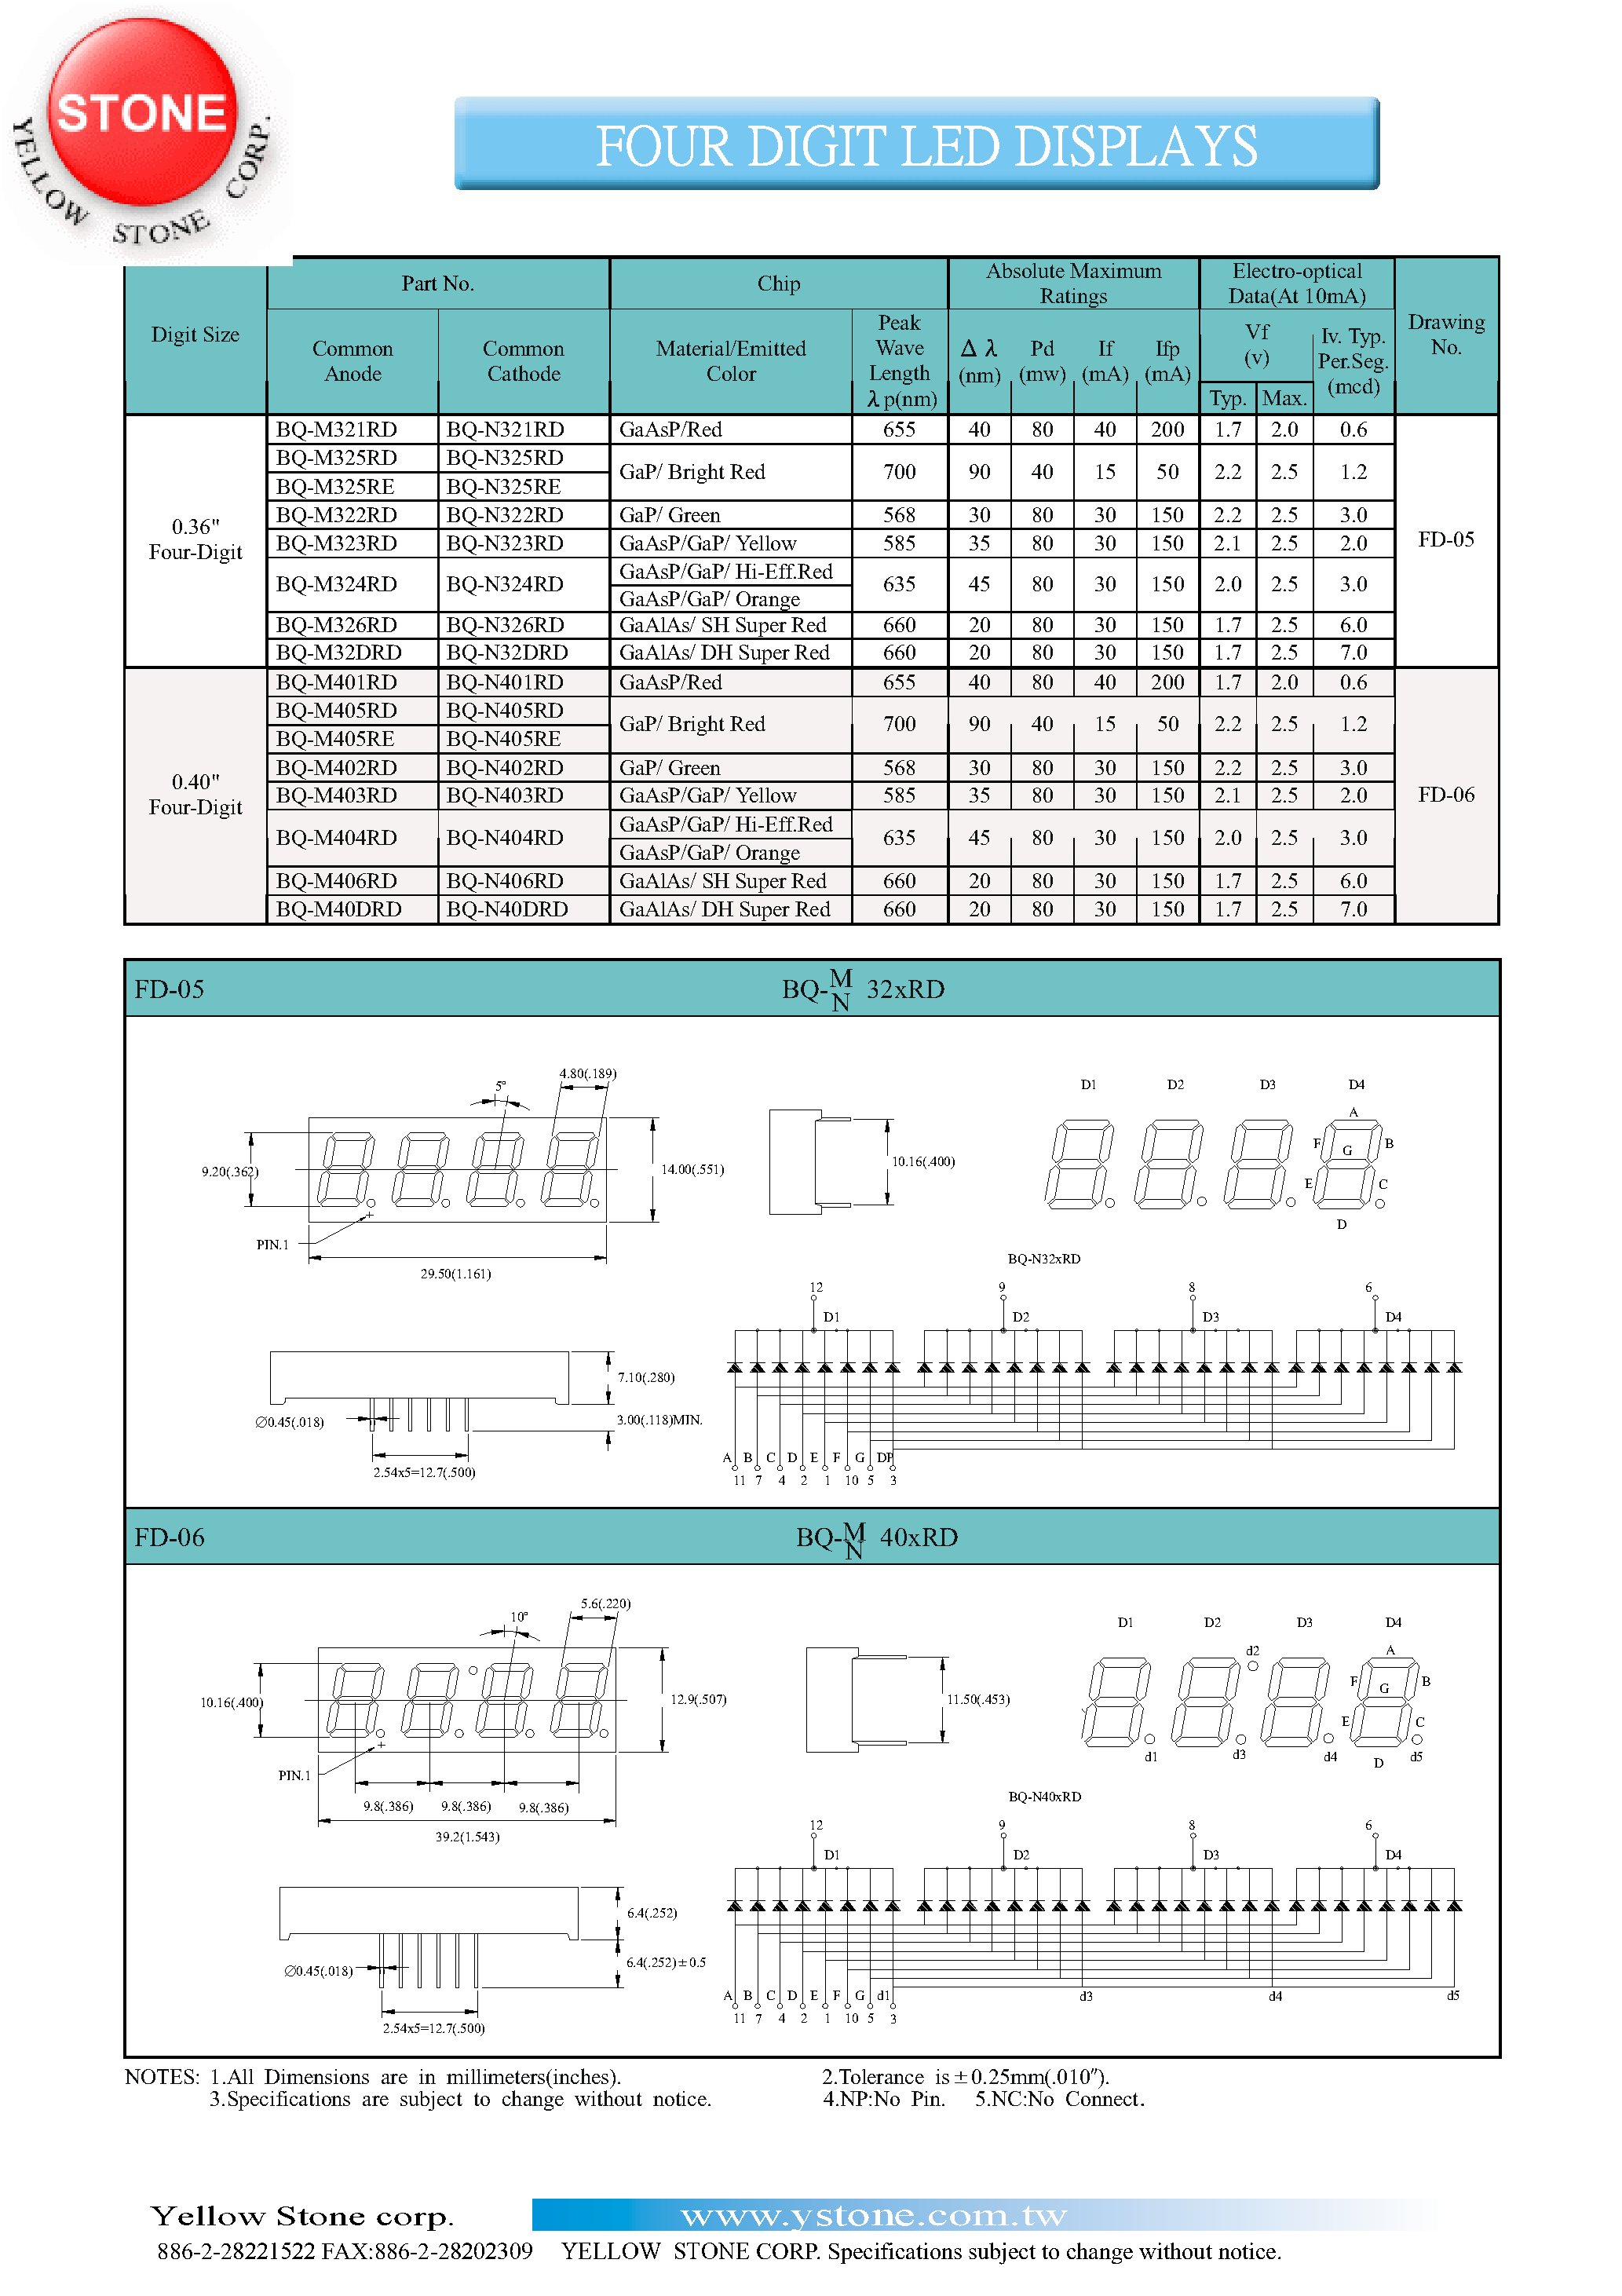 Datasheet BQ-M401RD - FOUR DIGIT LED DISPLAYS page 1